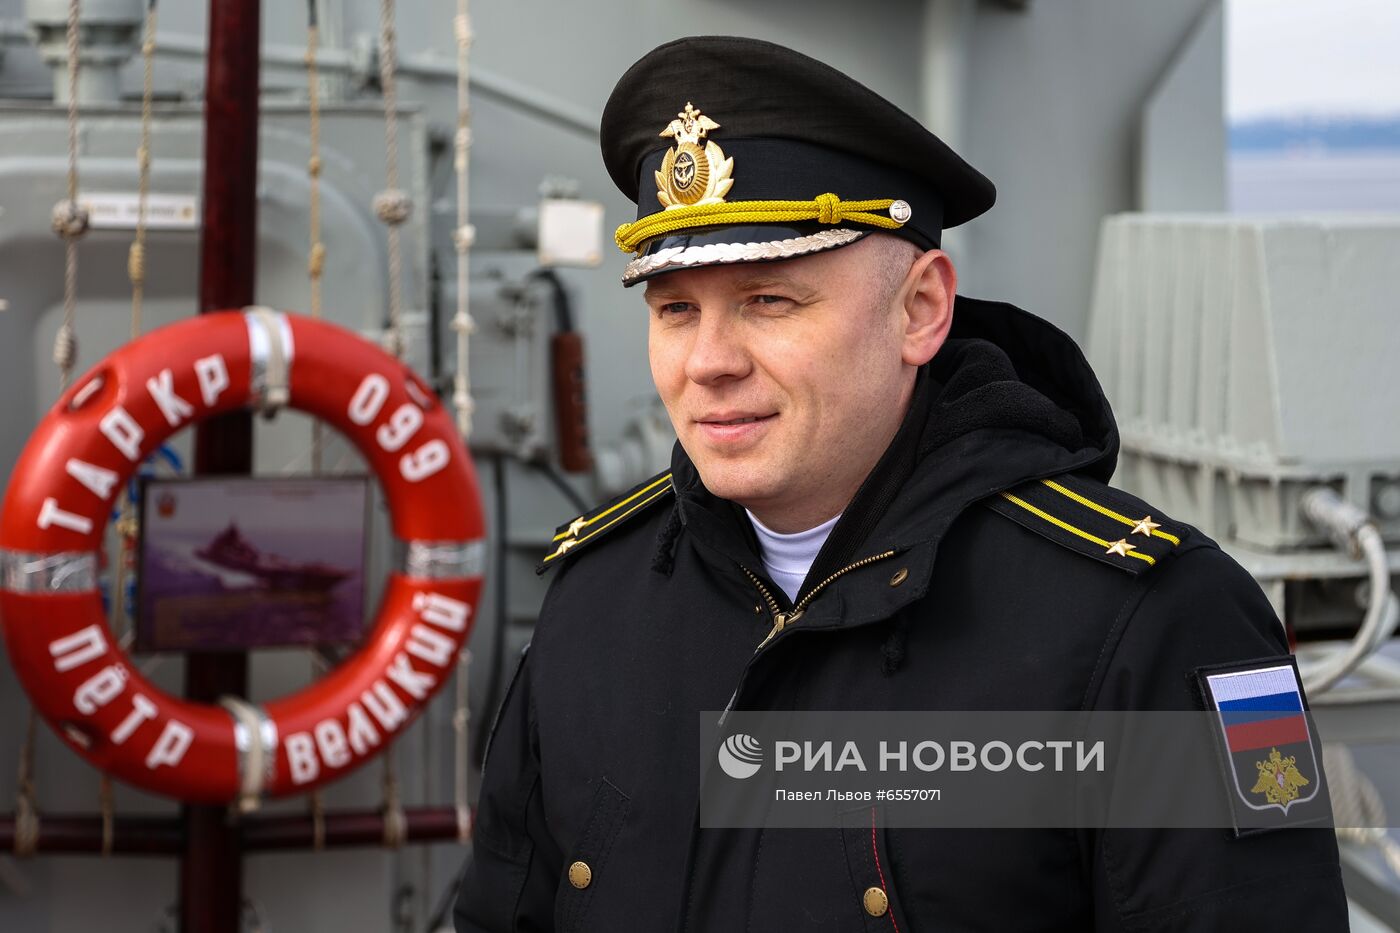 Учения Северного флота "Кумжа-2021" с участием крейсера "Пётр Великий"